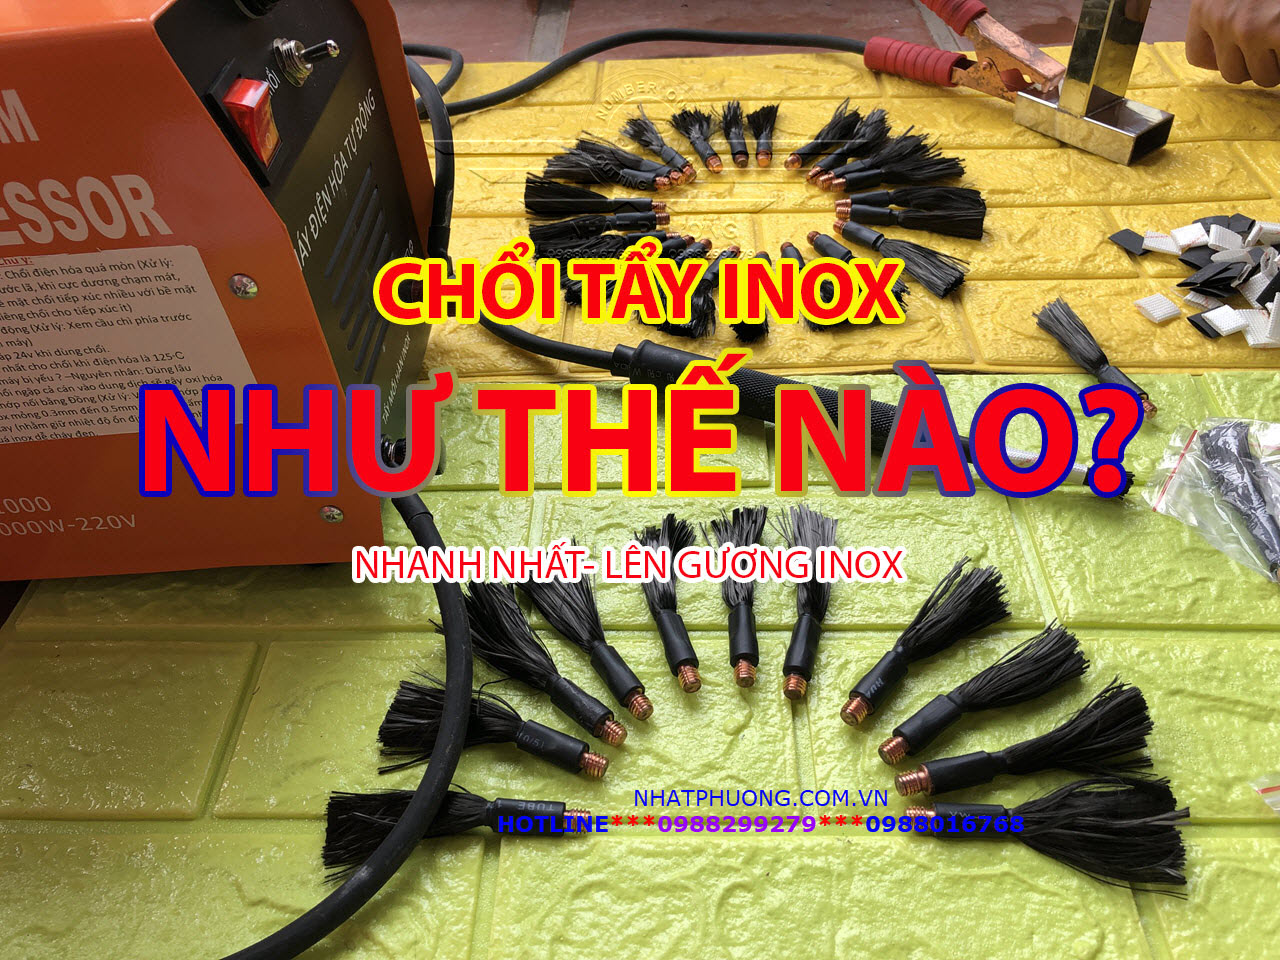 Chổi Tẩy Mối Hàn Inox, Chổi Điện Hóa Mối Hàn Inox- Tẩy được trên 6 tấn Inox, được hướng dẫn kinh nghiệm đánh bóng Inox 10 năm tại Nhật